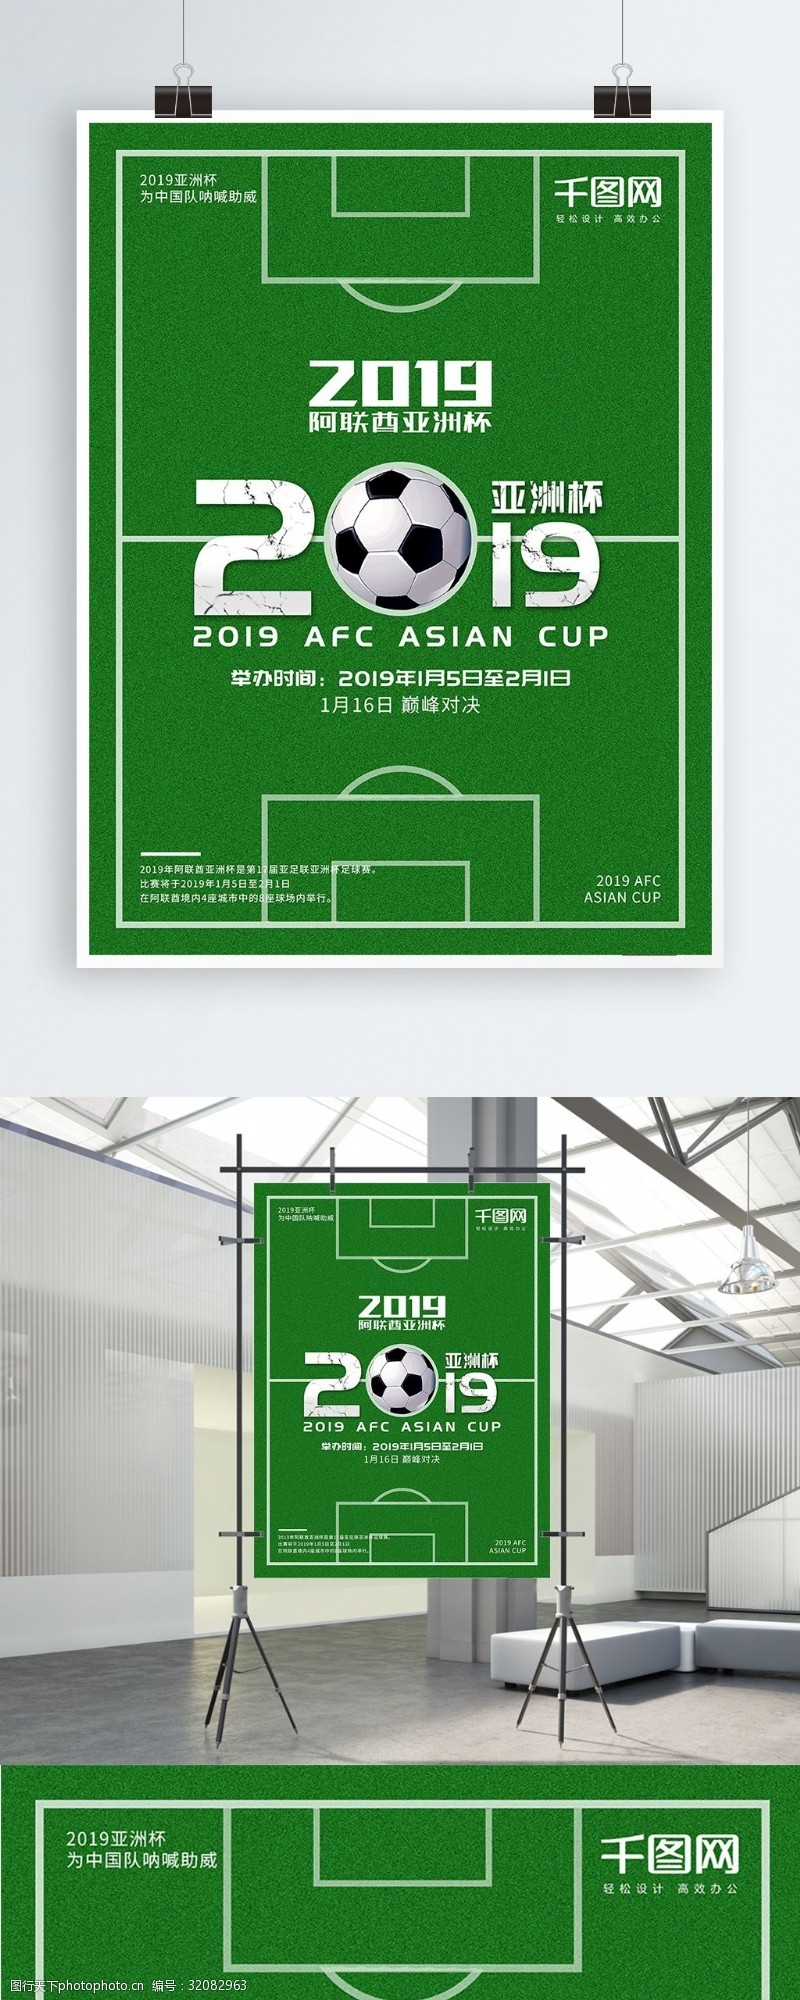 2019阿联酋亚洲杯宣传海报